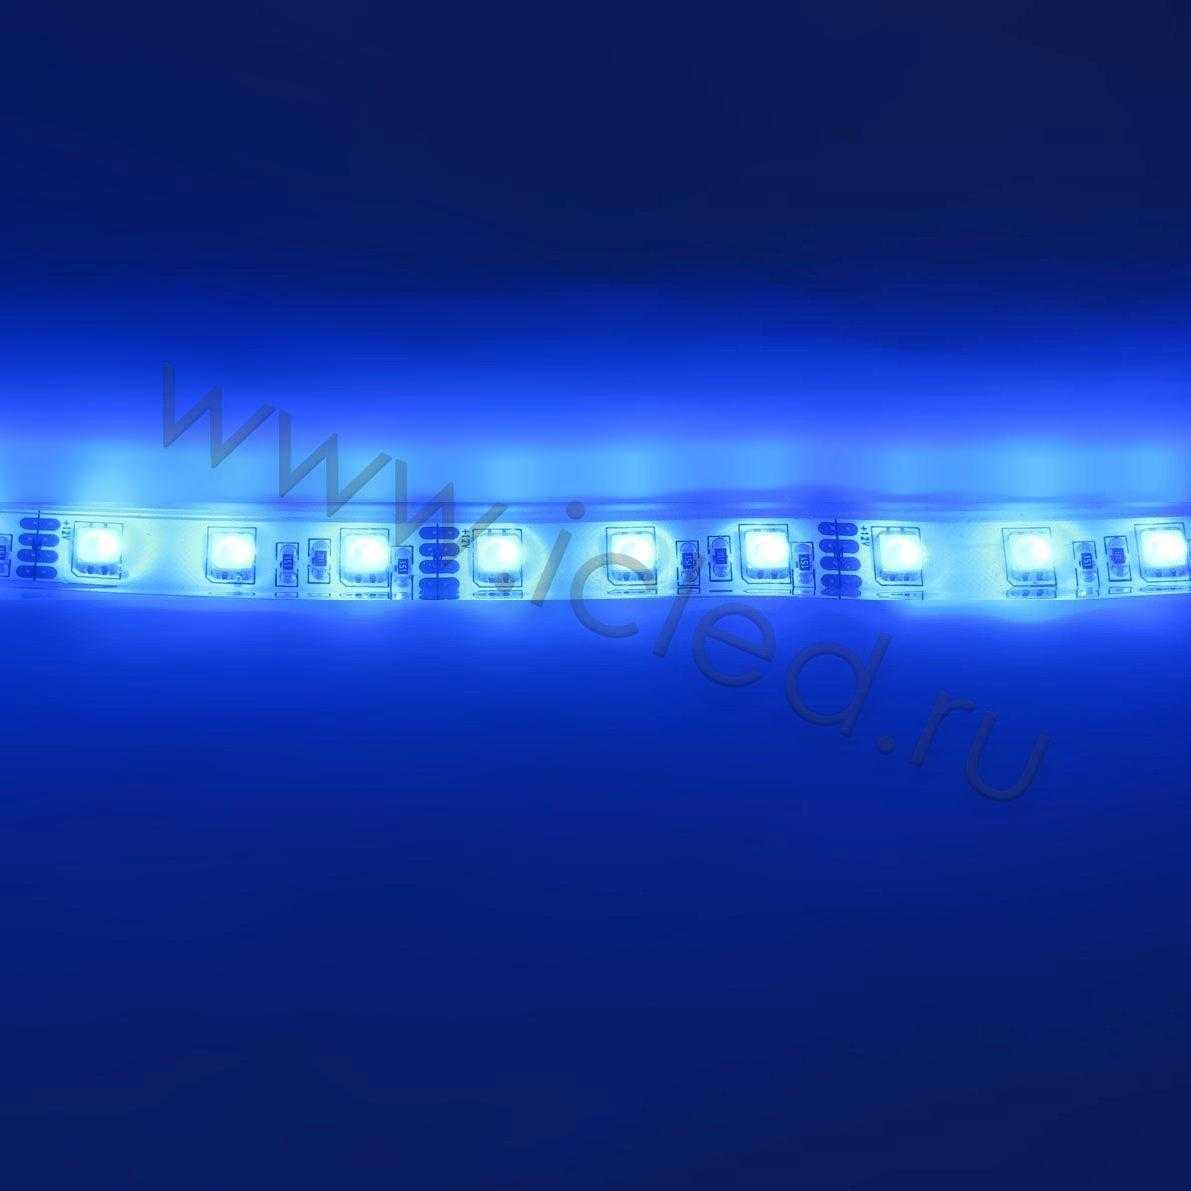 Влагозащищенные светодиодные ленты Светодиодная лента Standart PRO class, 5050, 60 led/m, RGB, 12V, P124, IP68 Icled